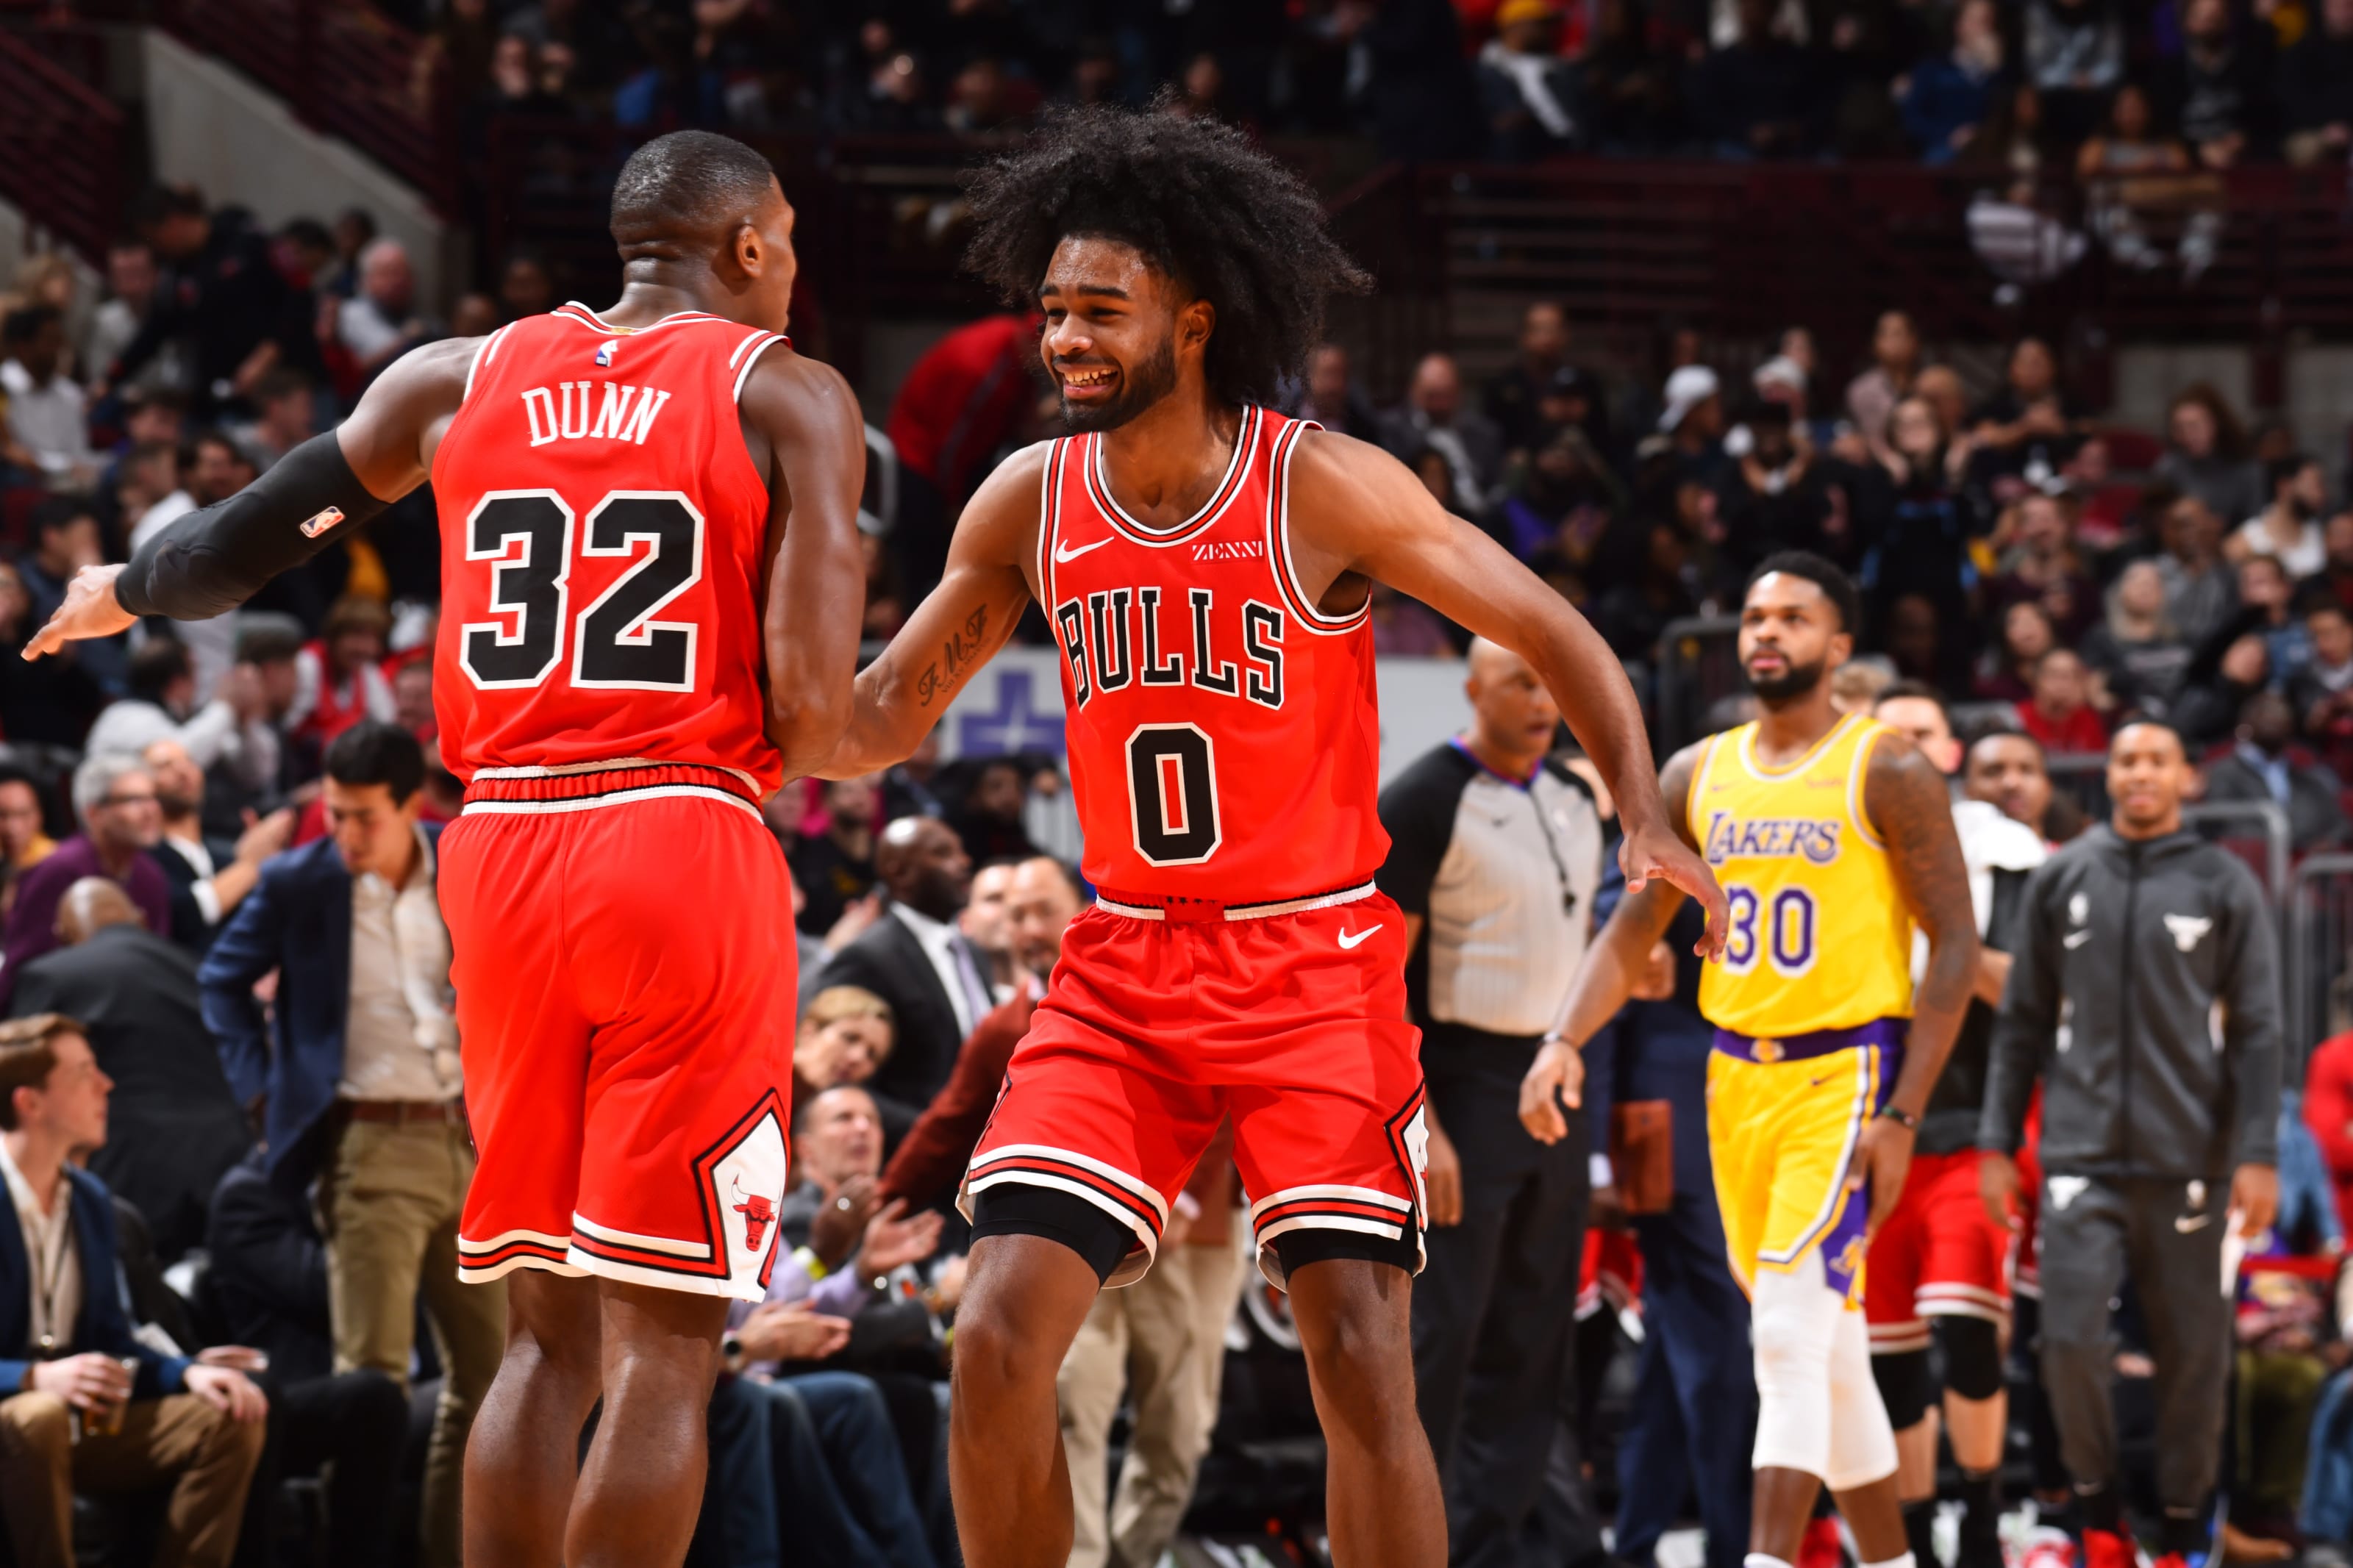 2019-20 Chicago Bulls Open Practice Photo Gallery